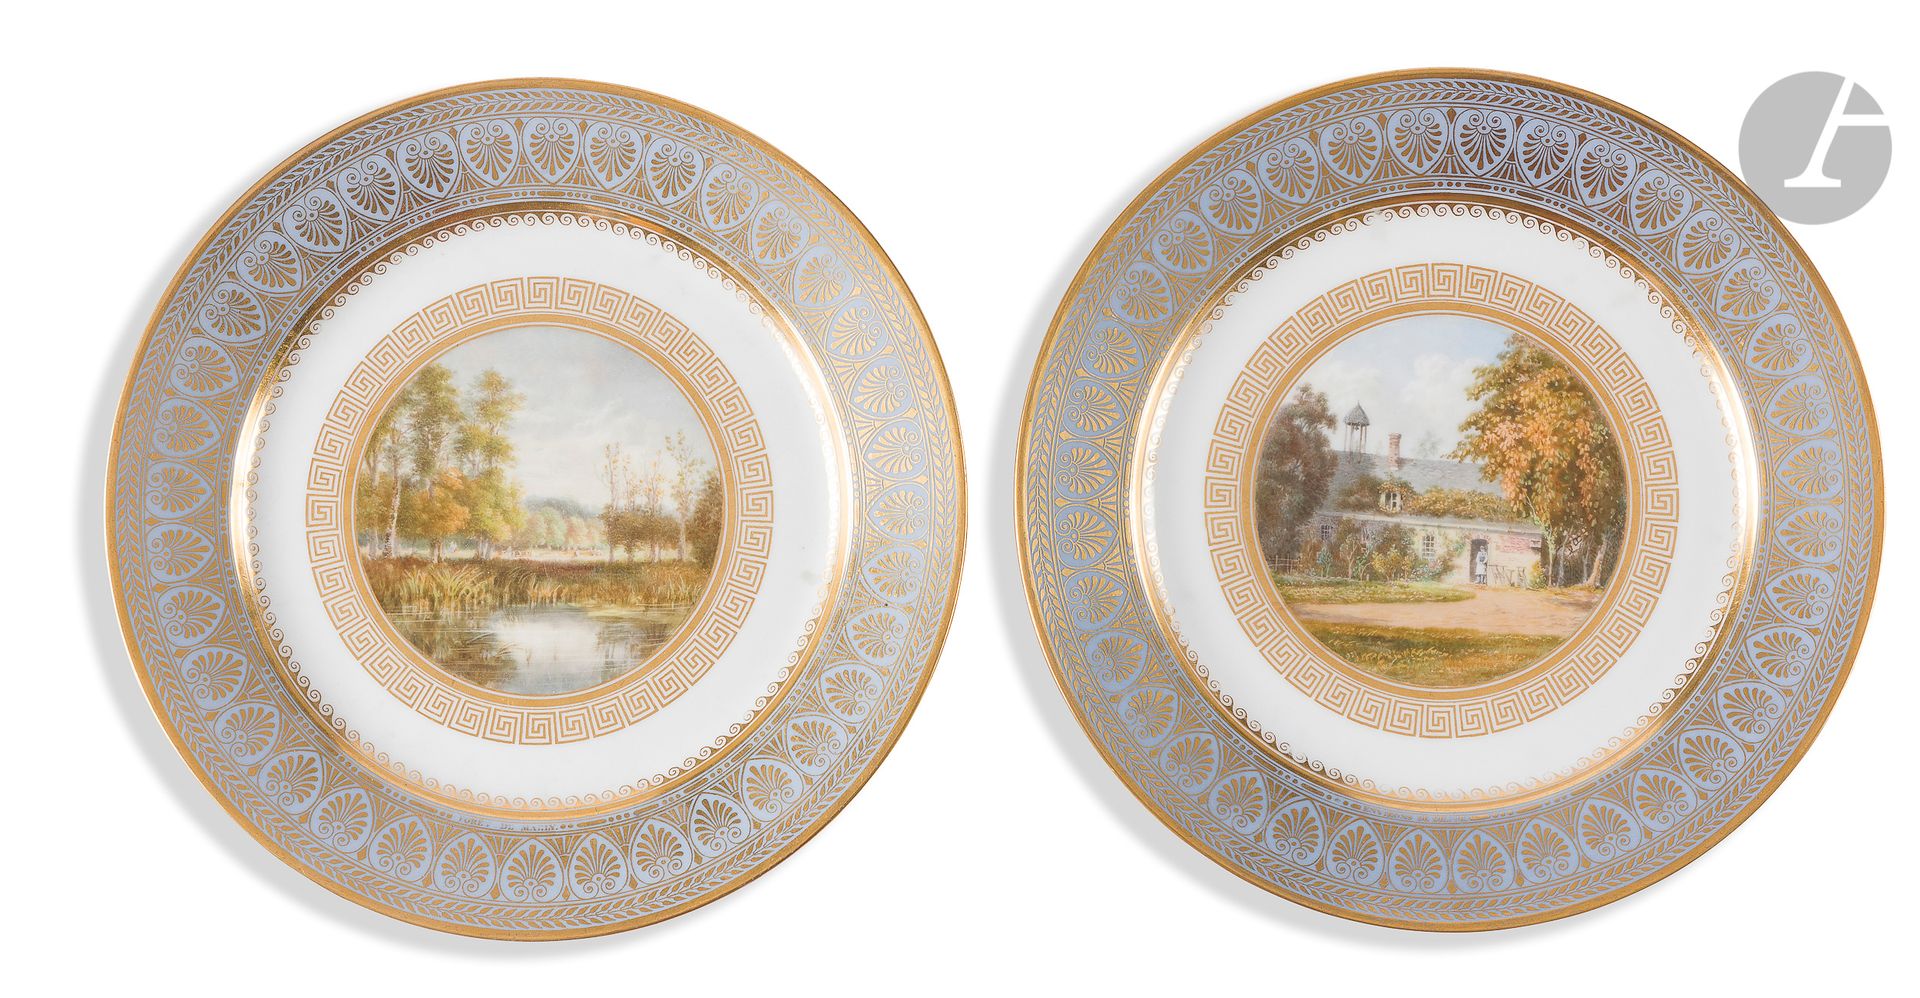 Null 塞夫勒两件
法国小景瓷盘，其中一件是迪耶普周围的景色，另一件是马利森林的景色，周围有金色的希腊人楣，翼上有金色的棕榈花、叶子楣和柱子楣，底部是蓝色玛瑙&hellip;